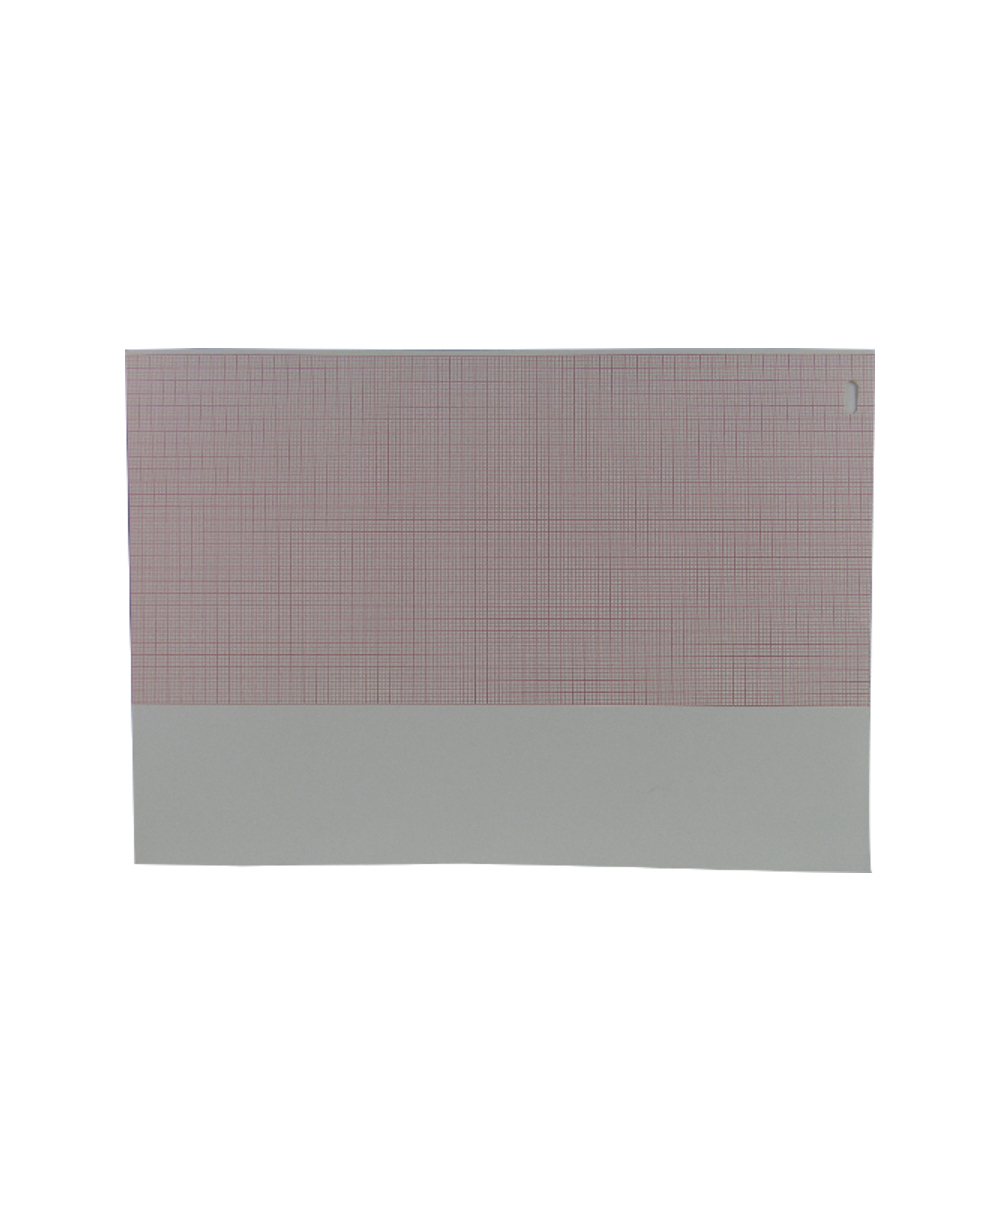 Carta per Elettrocardiografo Pagewriter 100, 200, Tc30, Tc50, Tc70 - 210 mm x 300 mm x 200 fogli